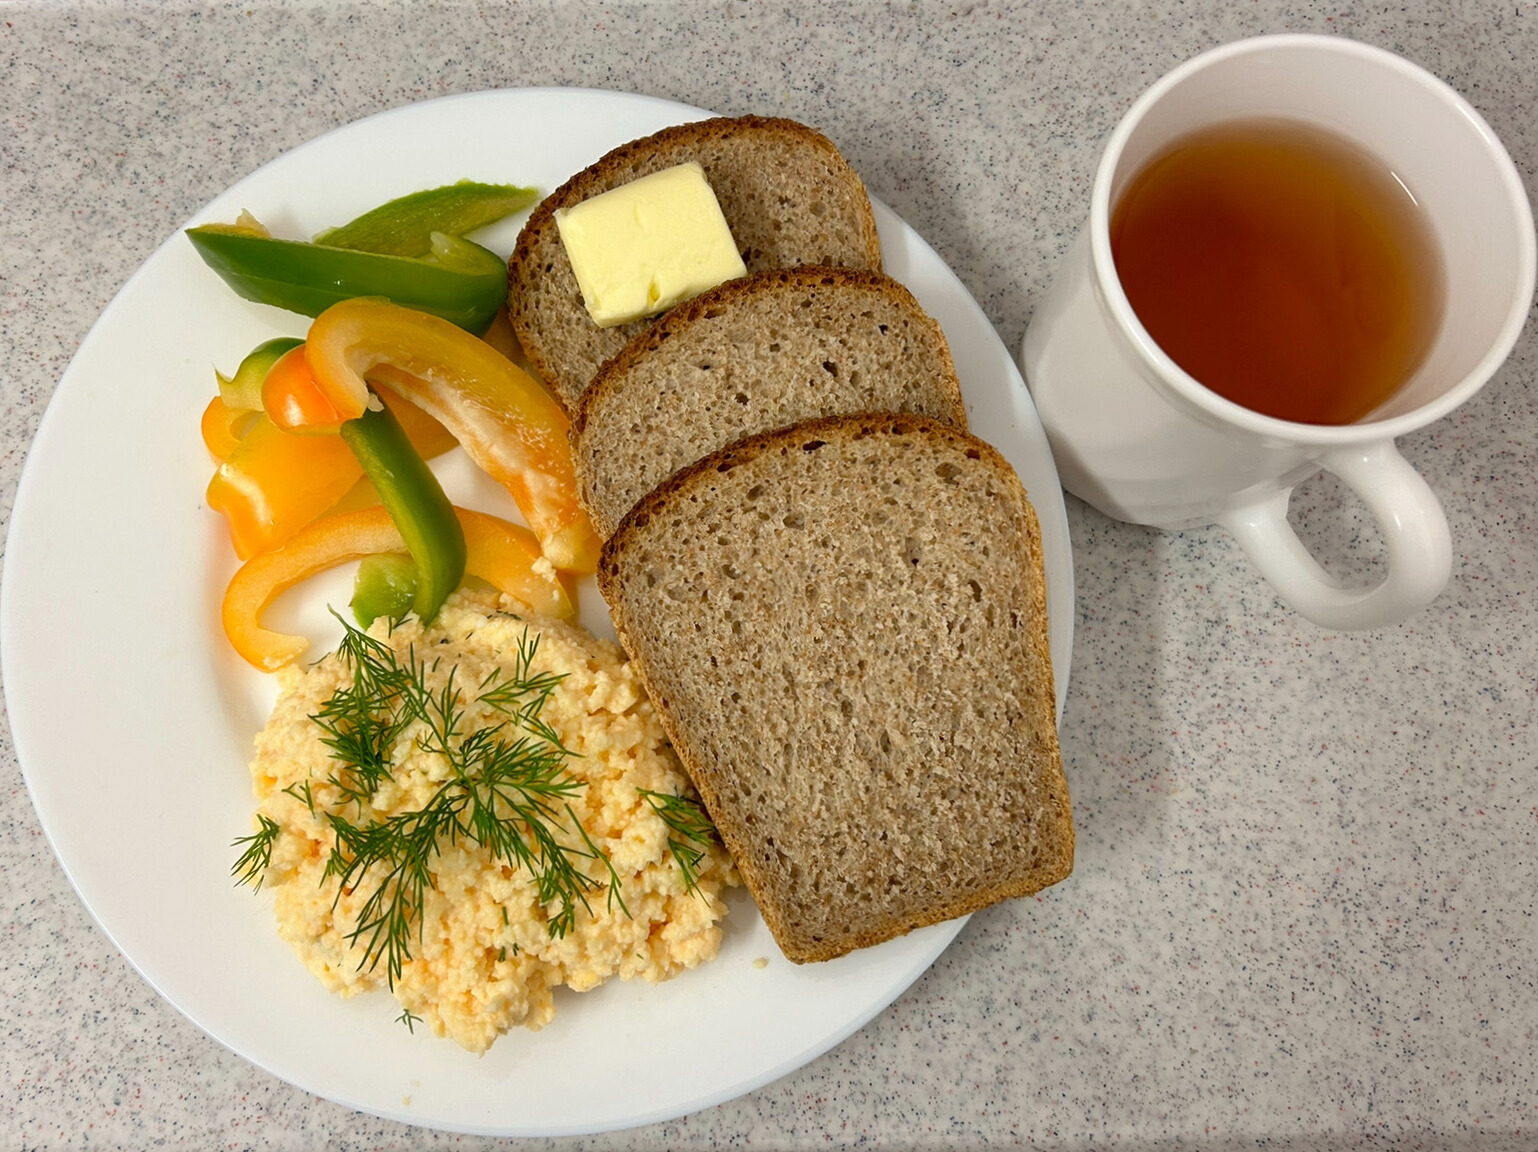 Na zdjęciu: Herbata czarna ekspresowa z cytryną Cateringowa, Chleb graham, Masło extra 82%, Pasta z jaj z koperkiem, Papryka świeża